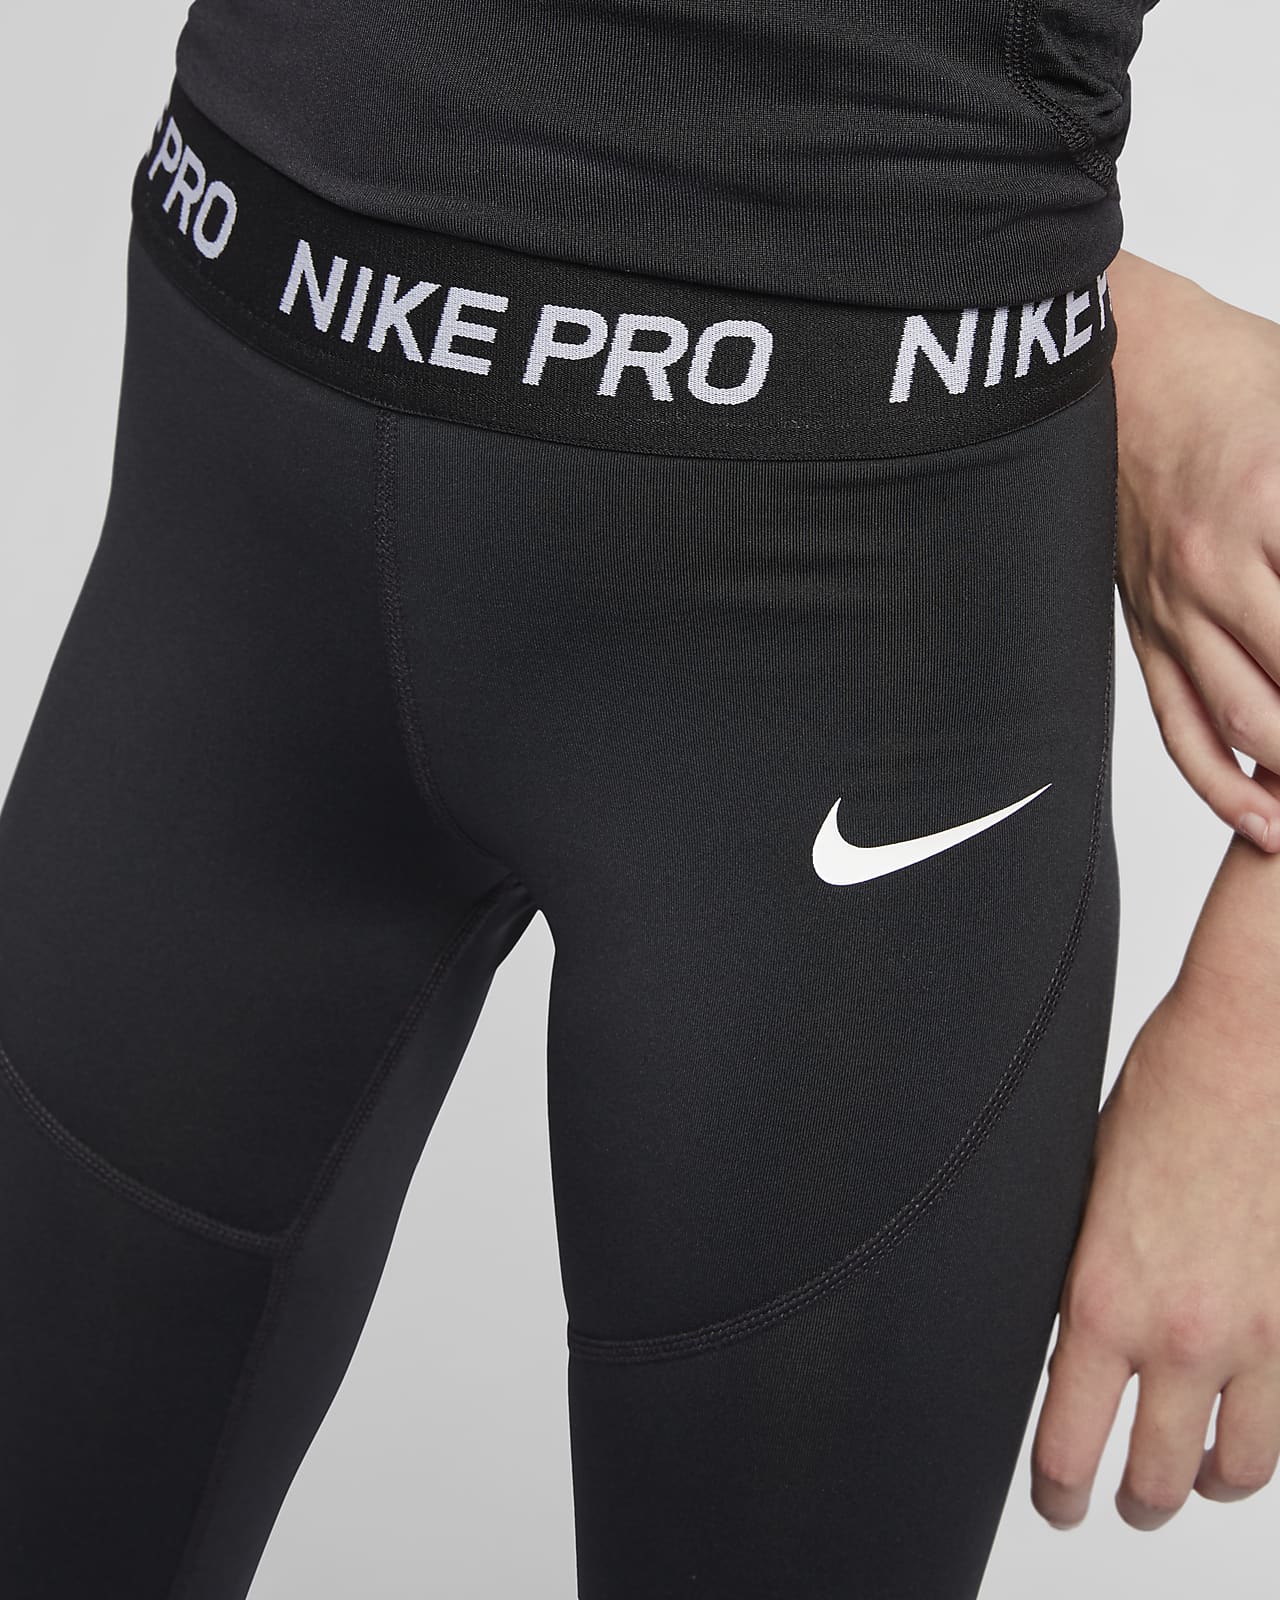 nike pro shorts and leggings